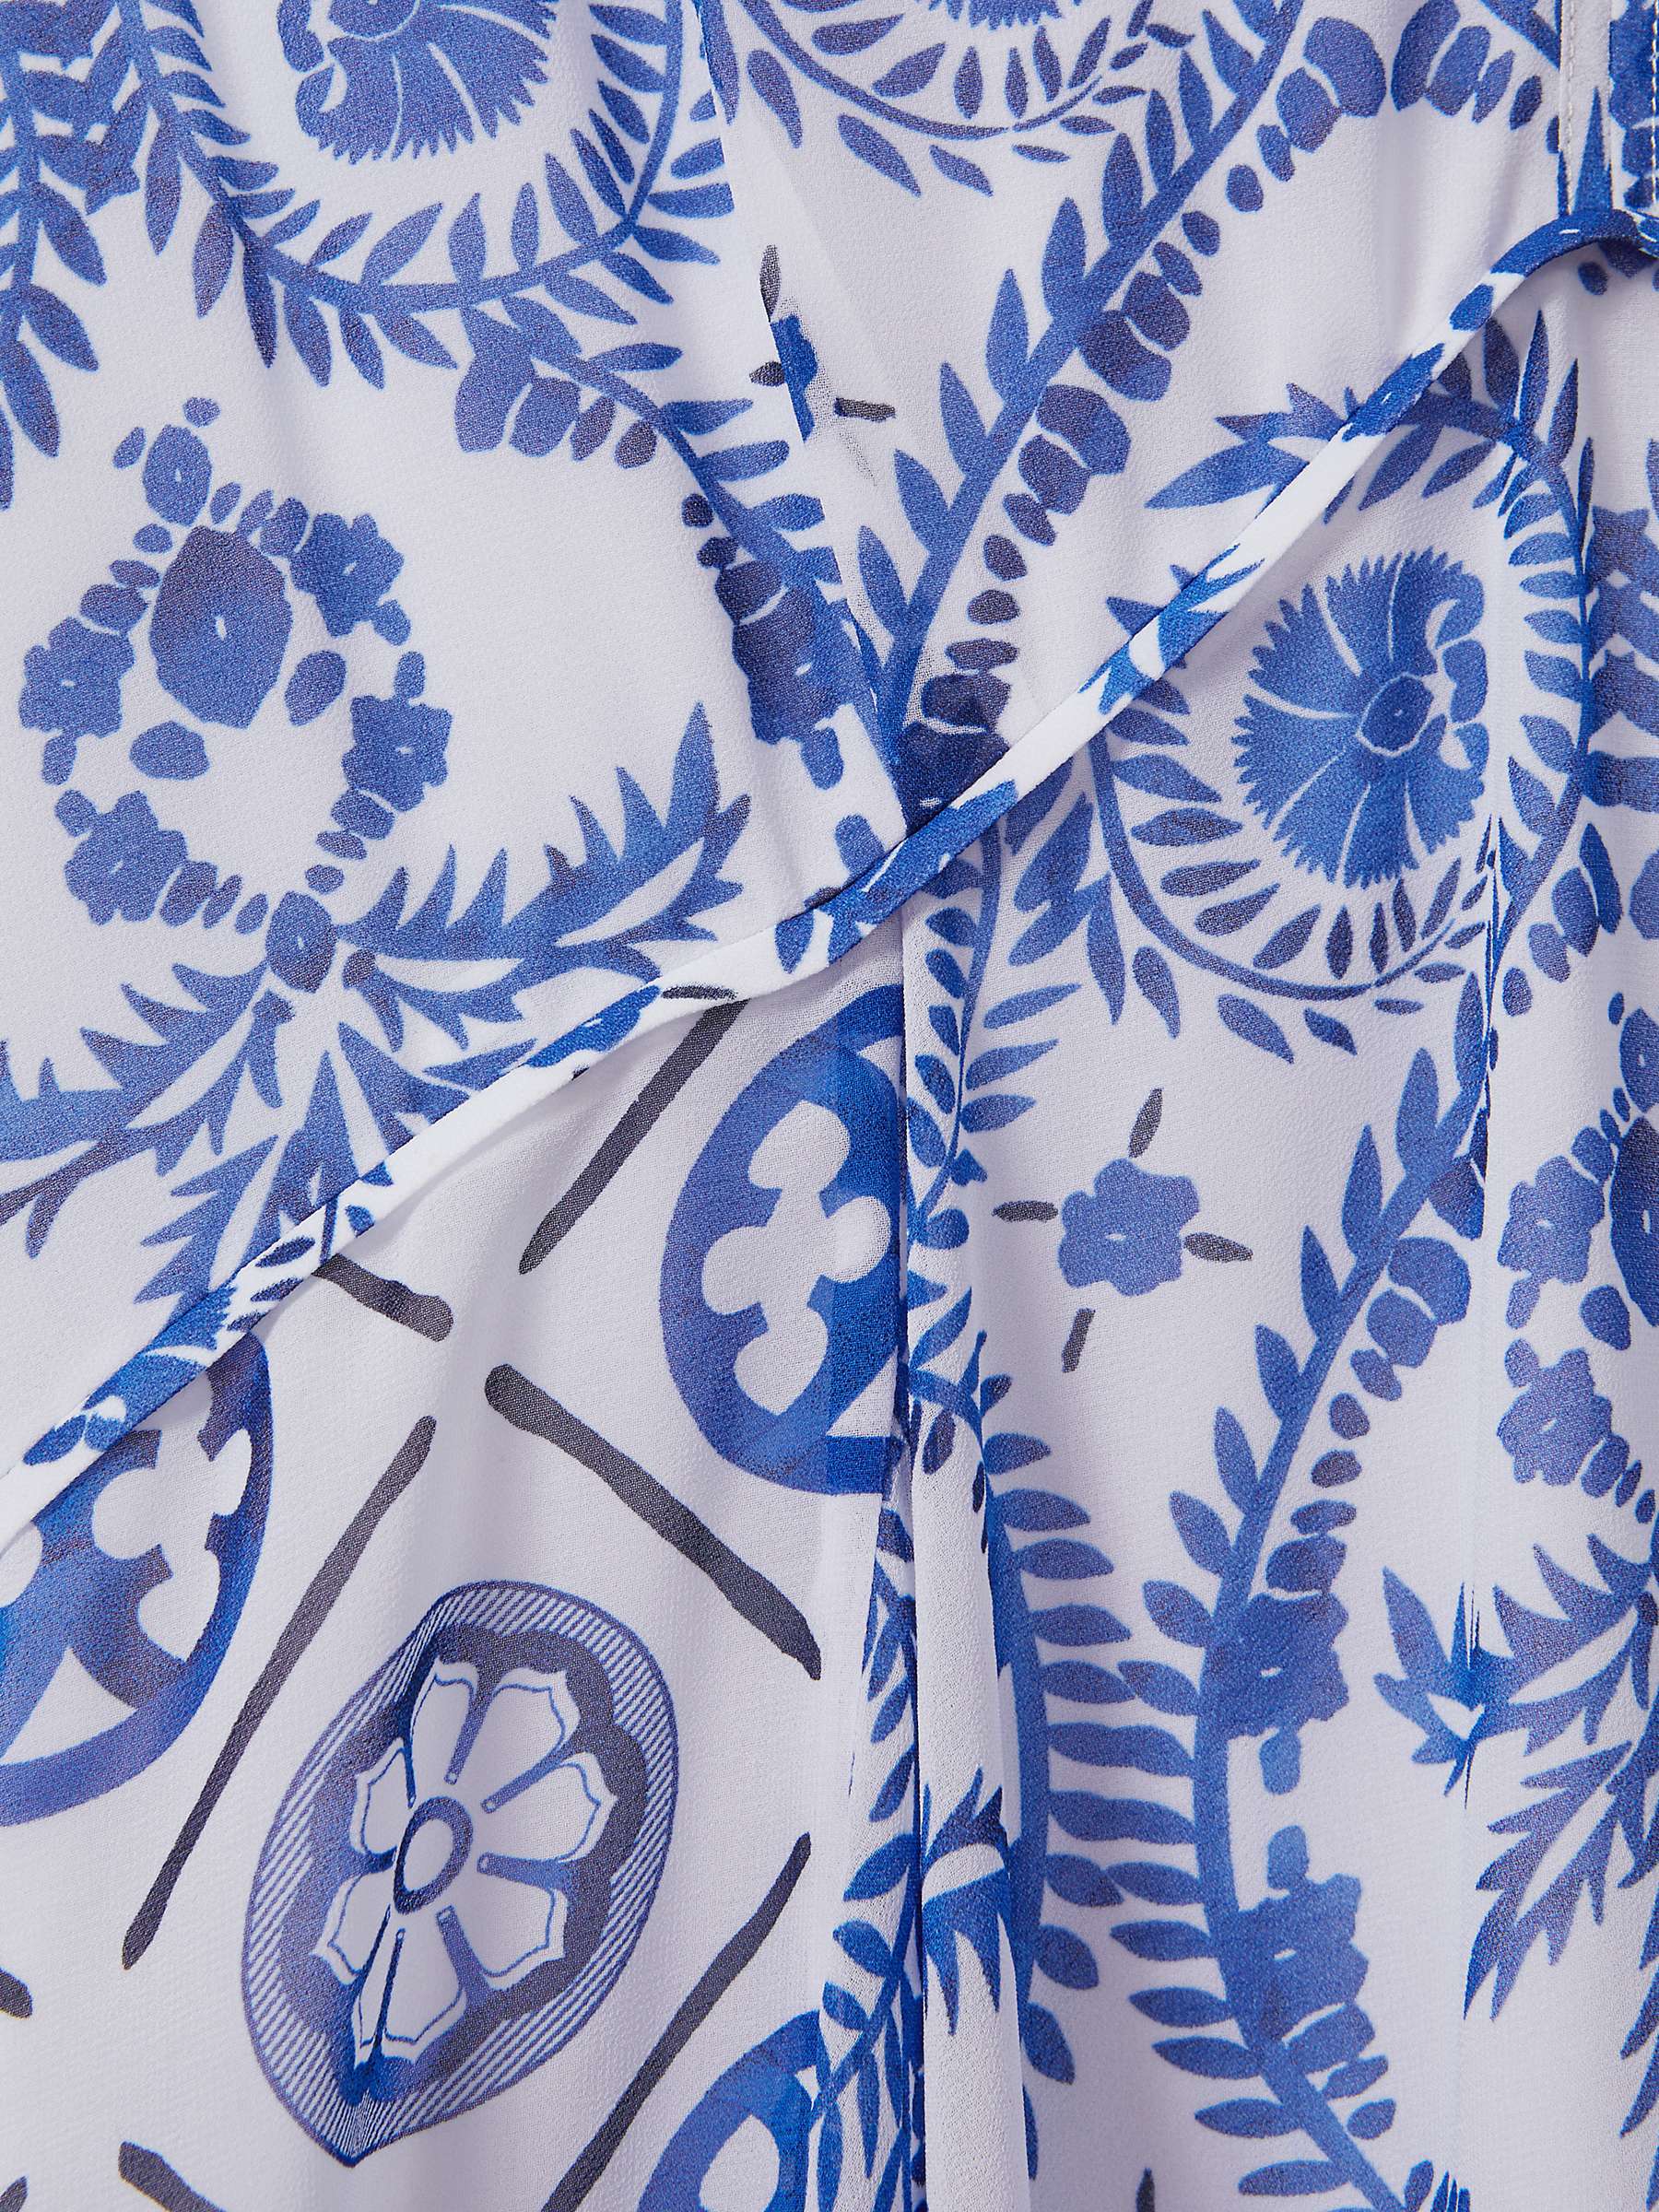 Buy Reiss Tiller Tile Print Halterneck Midi Dress, Blue/White Online at johnlewis.com